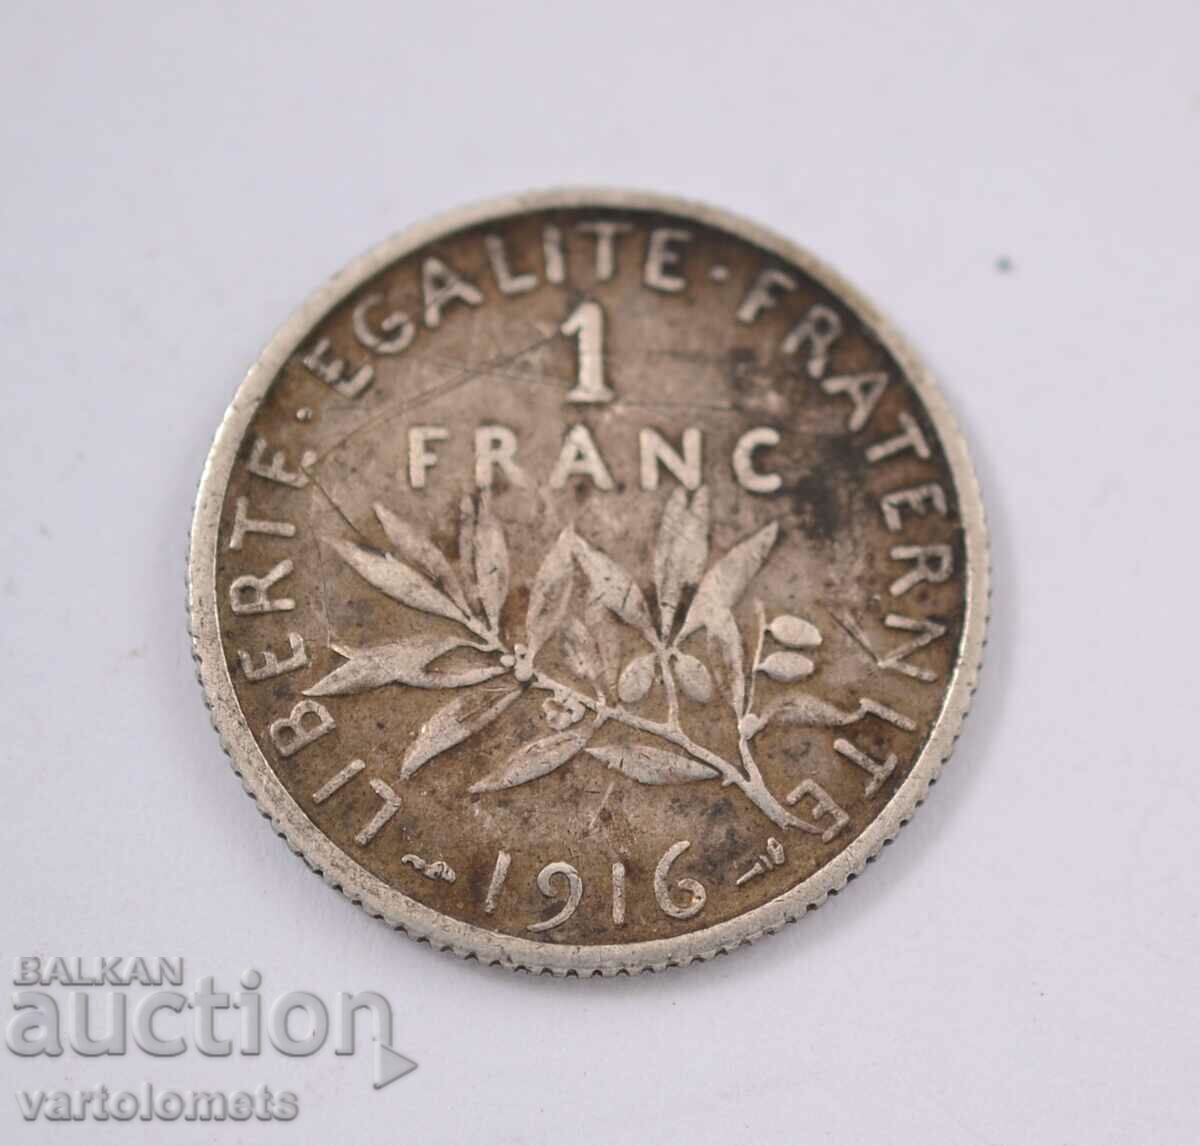 1 Franc, 1916 - France Silver 0.835, 5g, ø 23mm